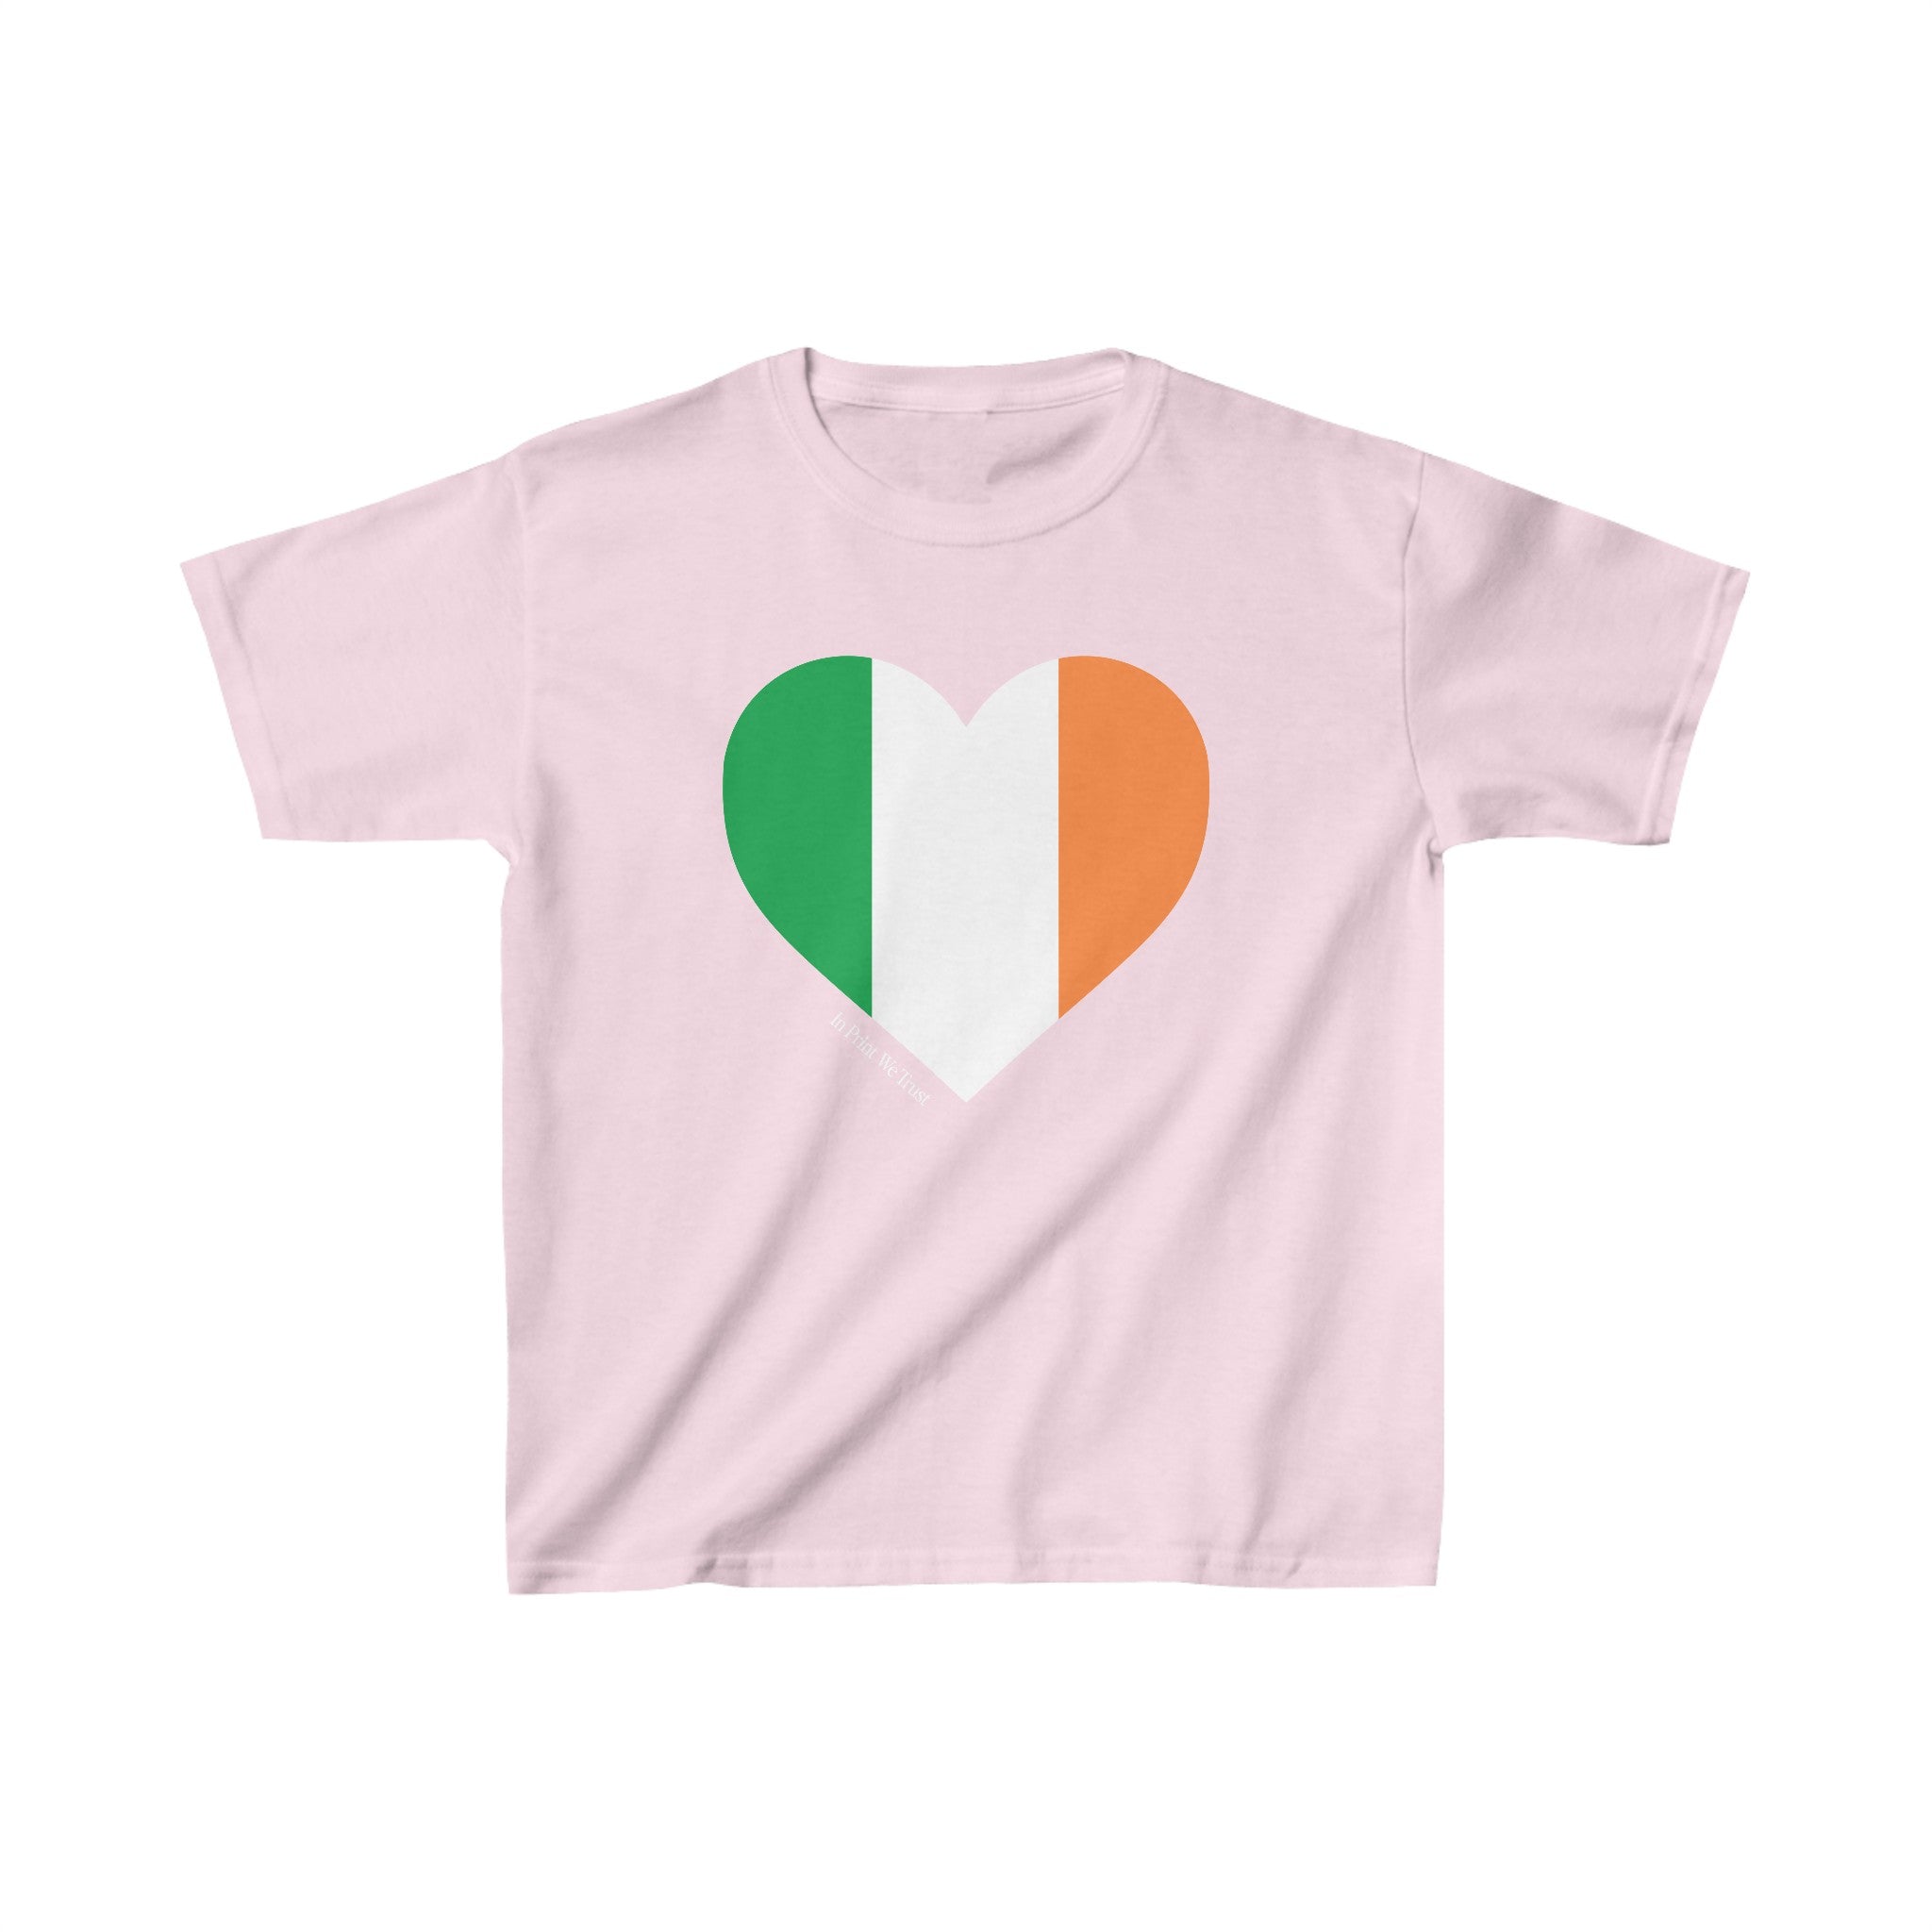 'Ireland' baby tee - In Print We Trust